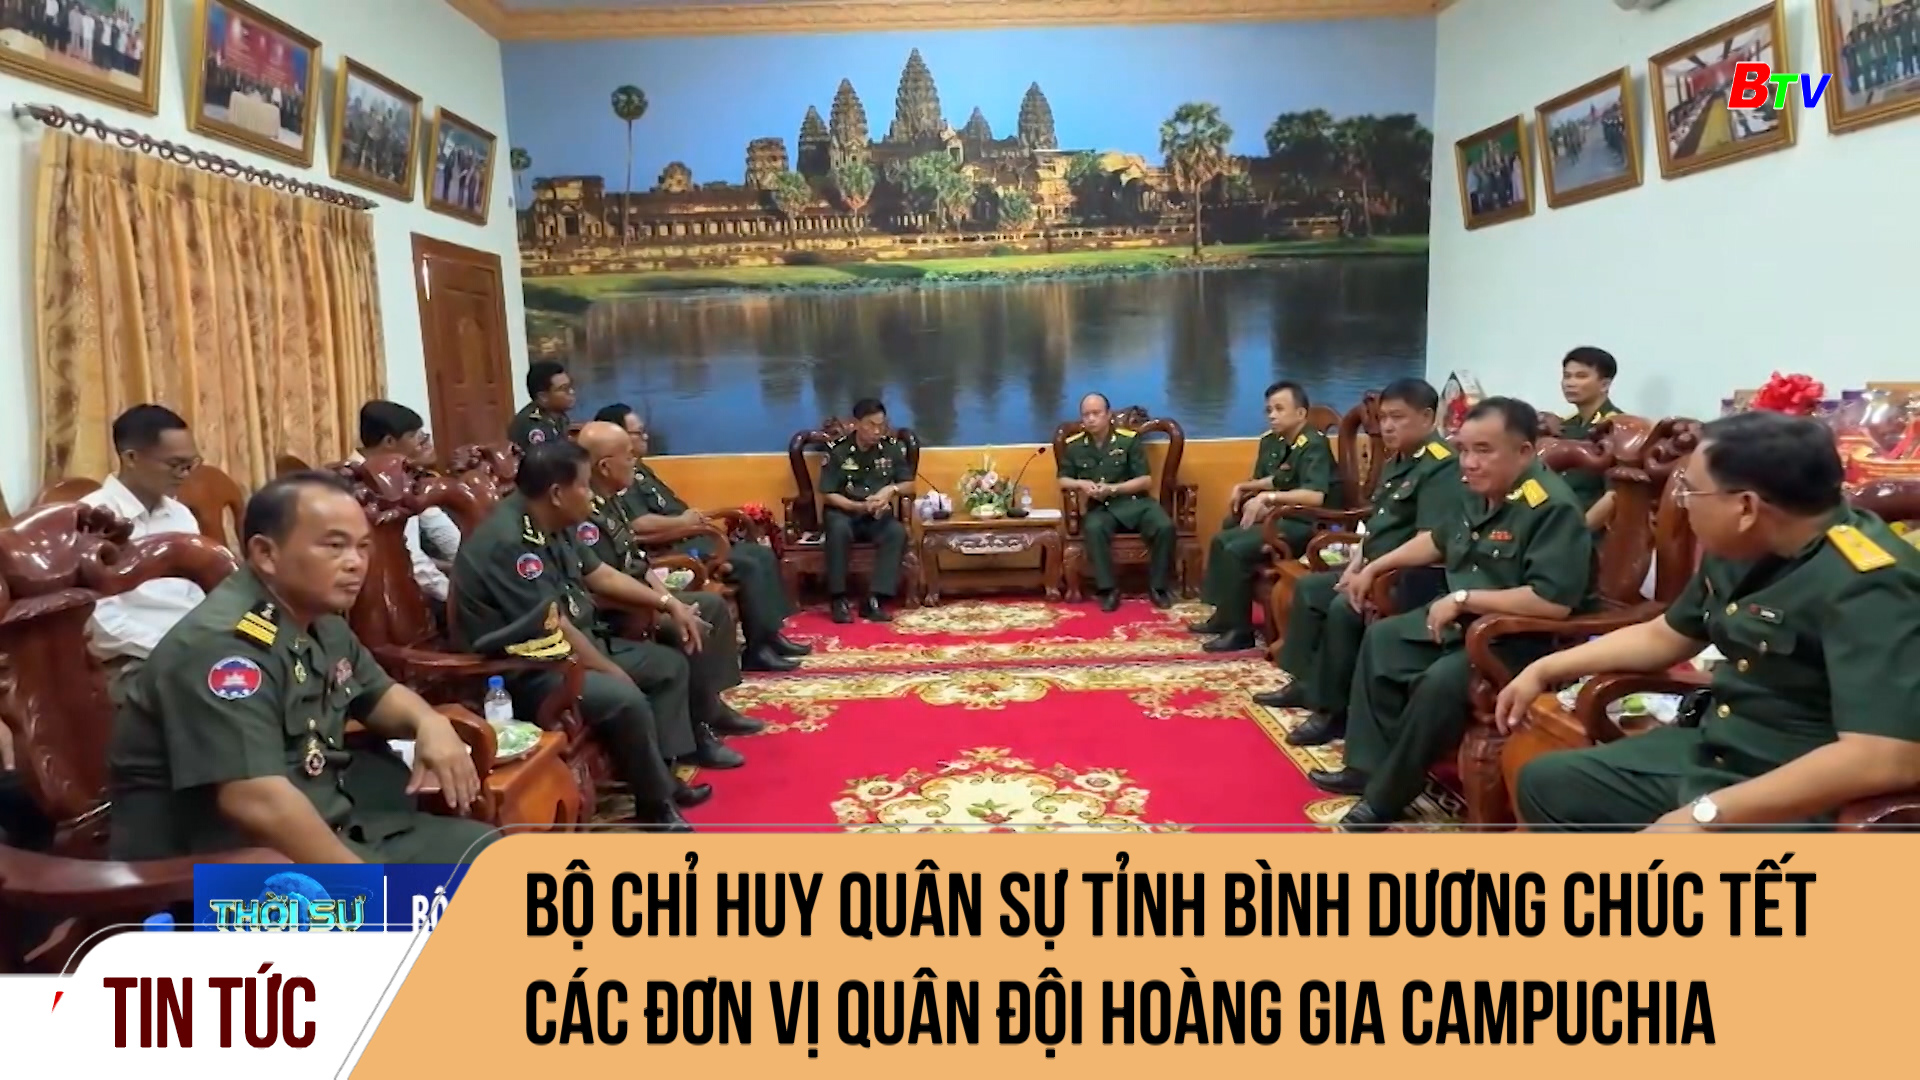 Bộ chỉ huy quân sự tỉnh Bình Dương chúc Tết các đơn vị quân đội Hoàng gia Campuchia